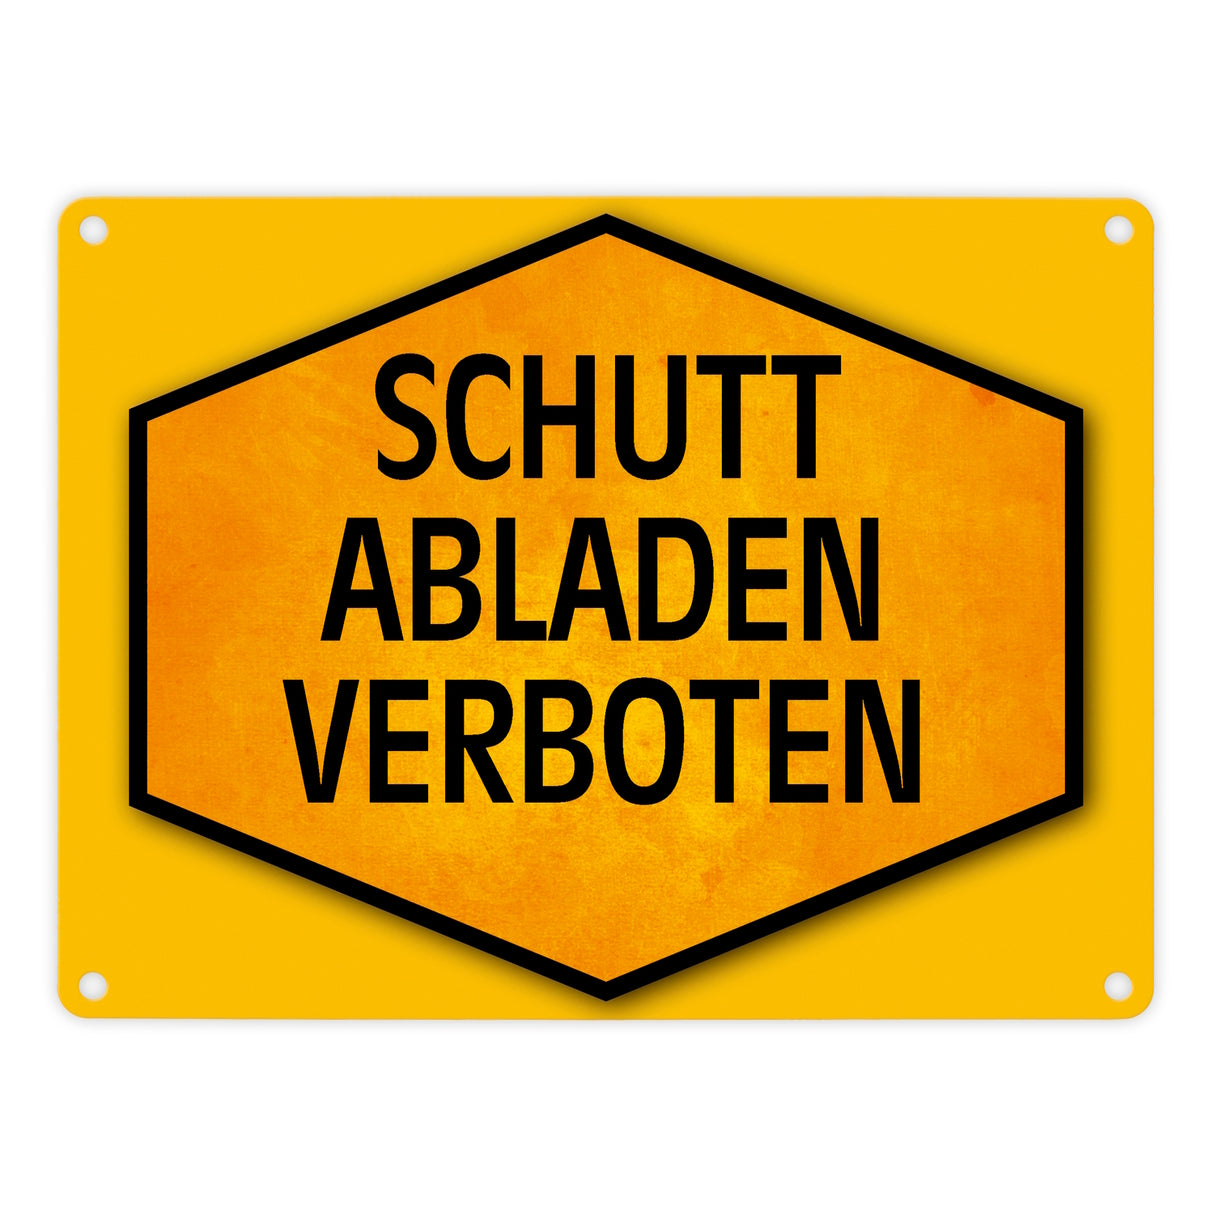 Schutt abladen verboten Warn- und Hinweisschild in Gelb und Schwarz